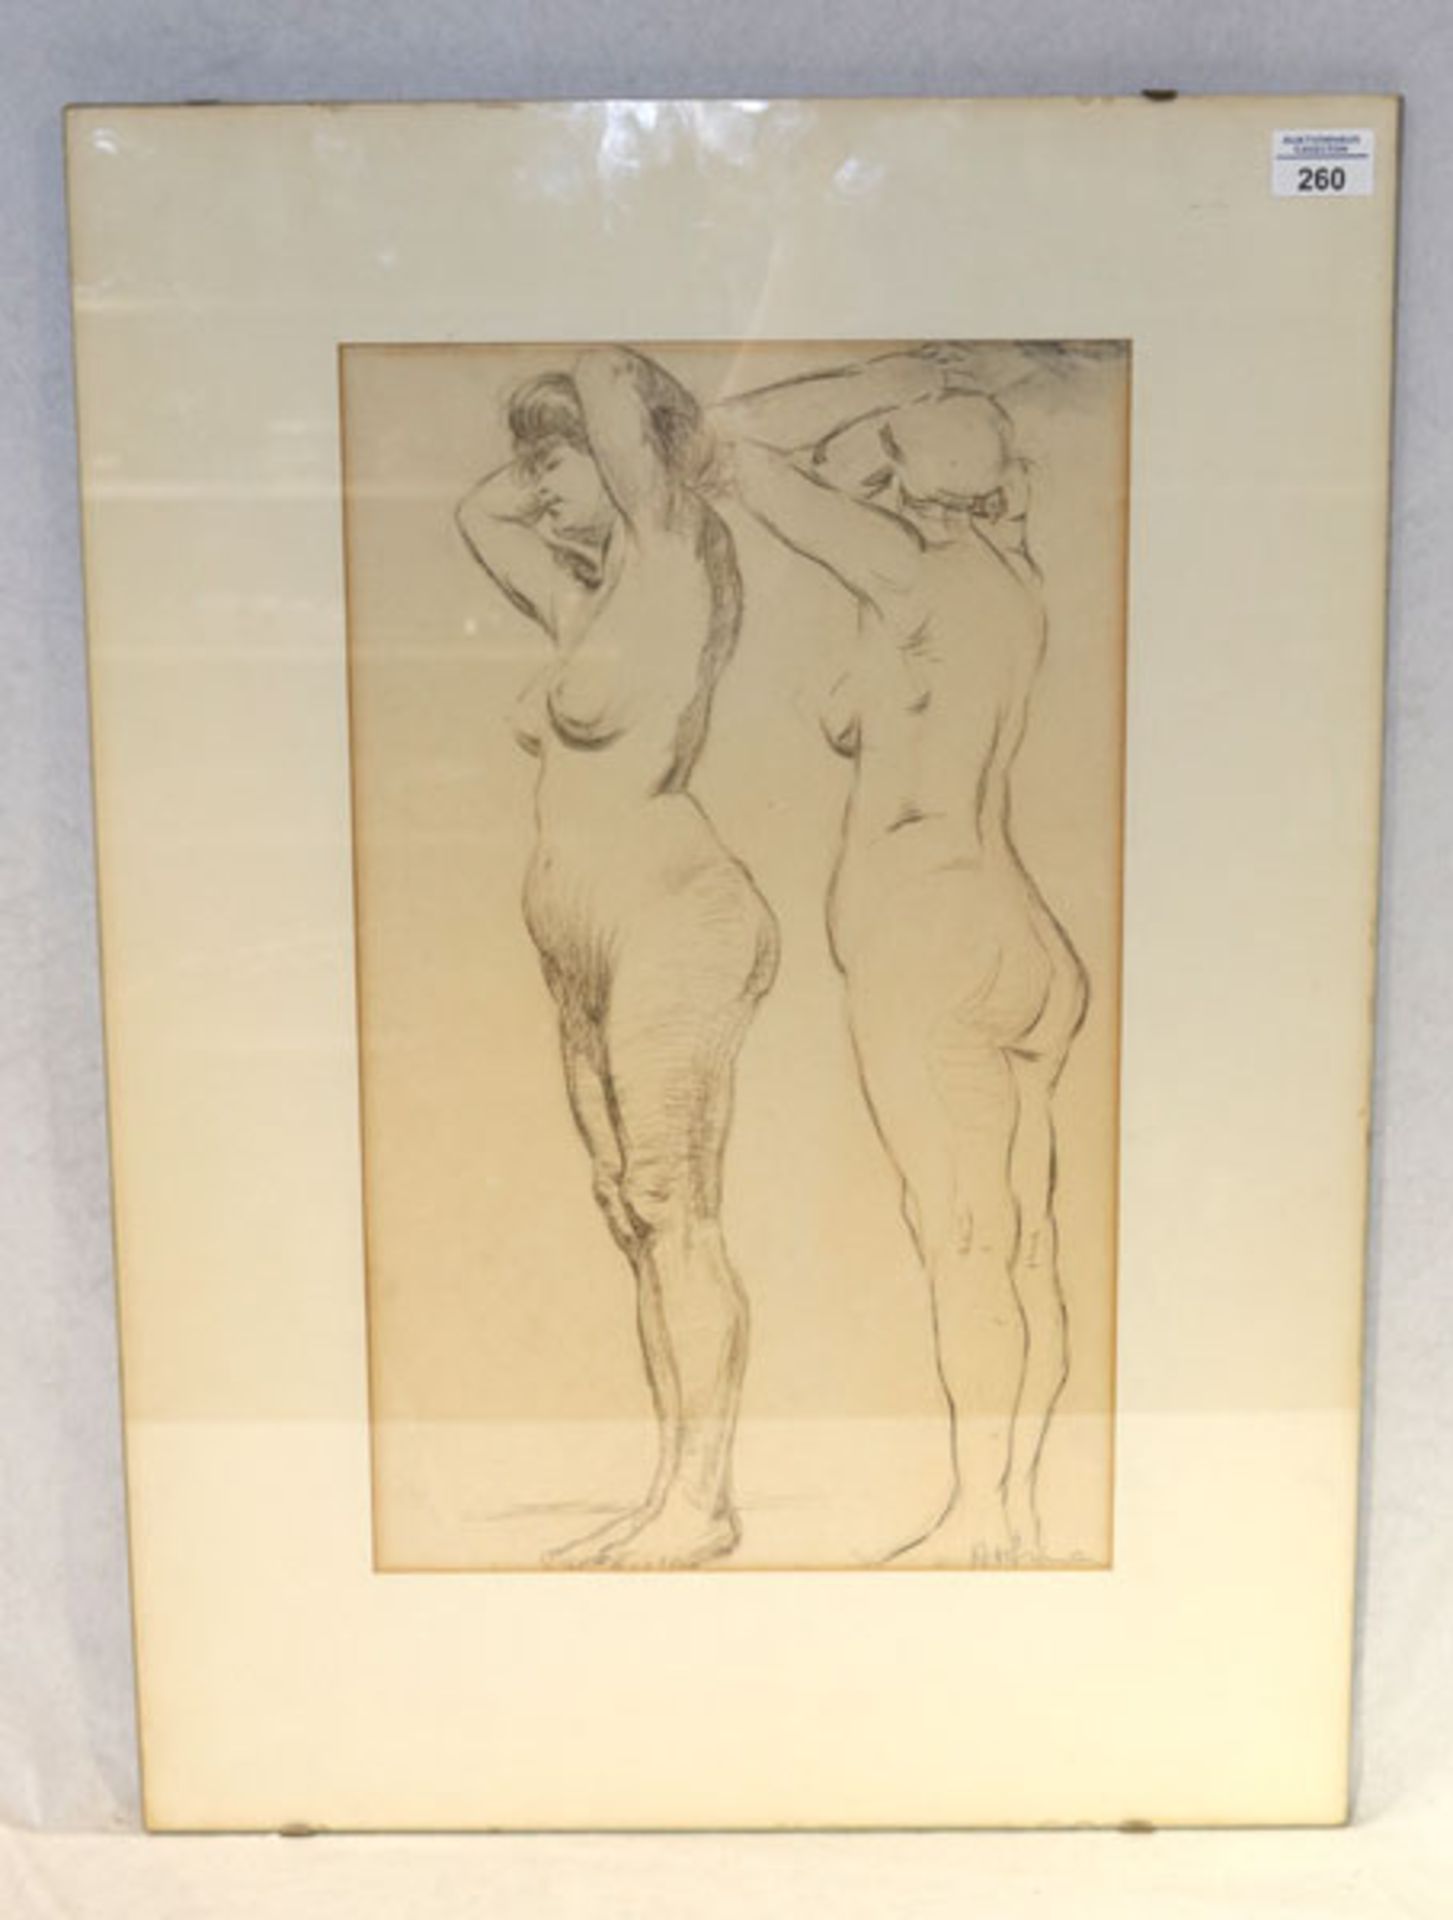 Zeichnung 'Frauenakt', signiert Arfn ?, mit Passepartout unter Glasrahmen, incl. Rahmen 70 cm x 50